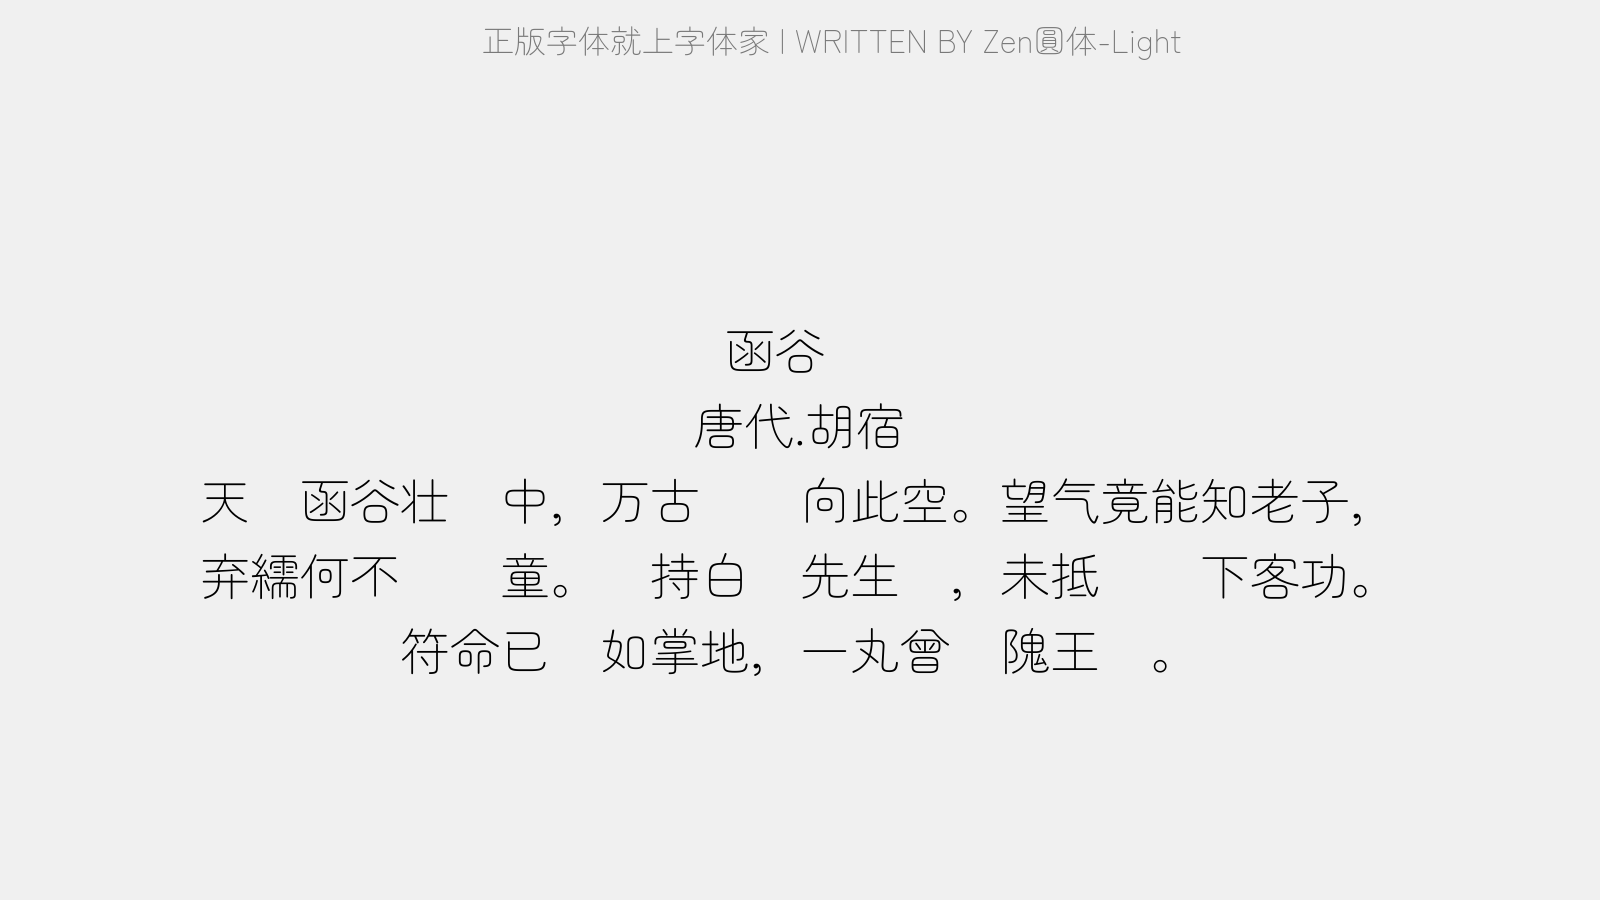 Zen圆体-Light - 函谷关